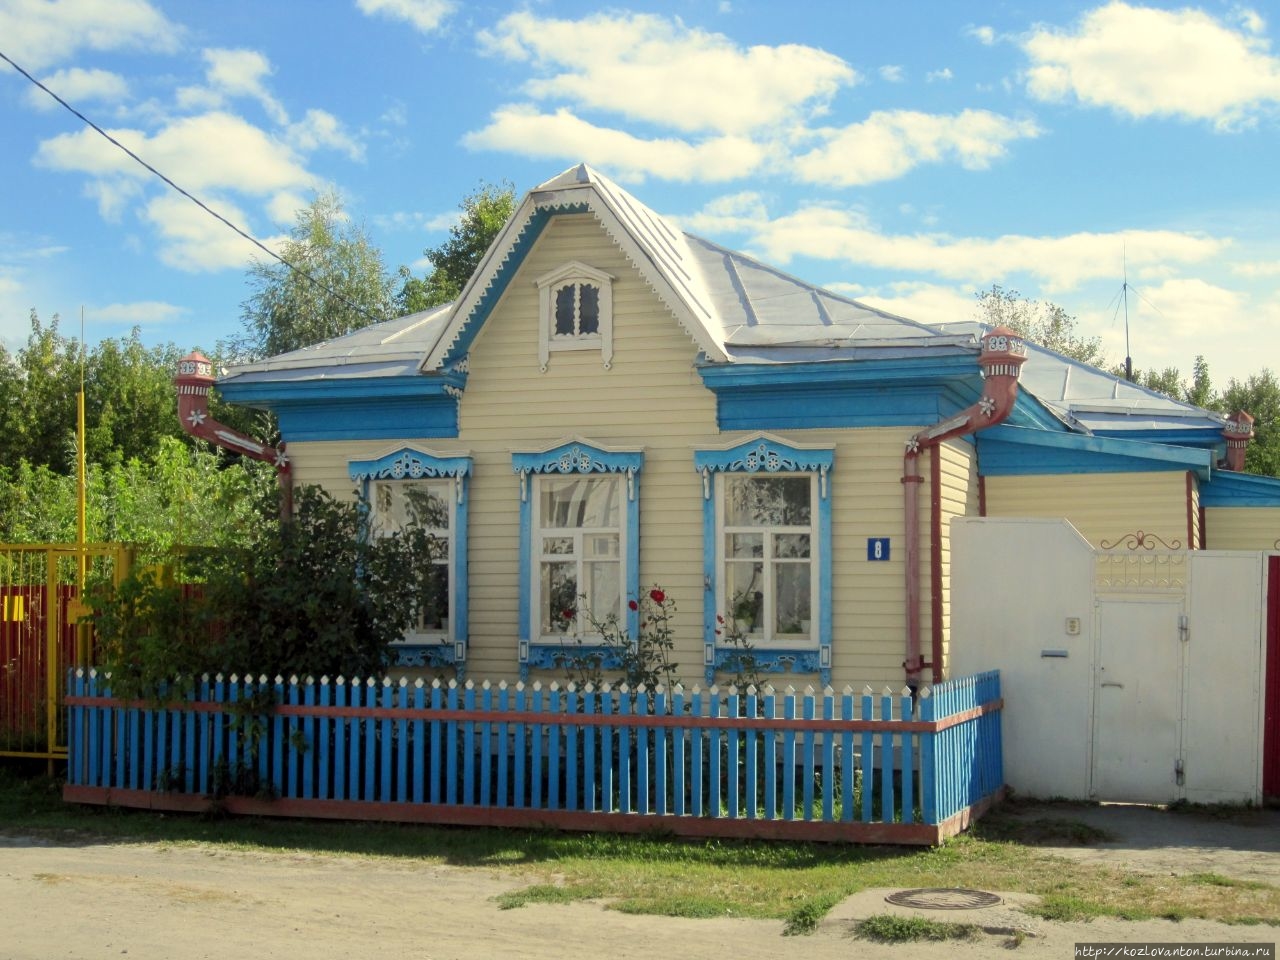 Просто симпатичный домик. Тобольск, Россия